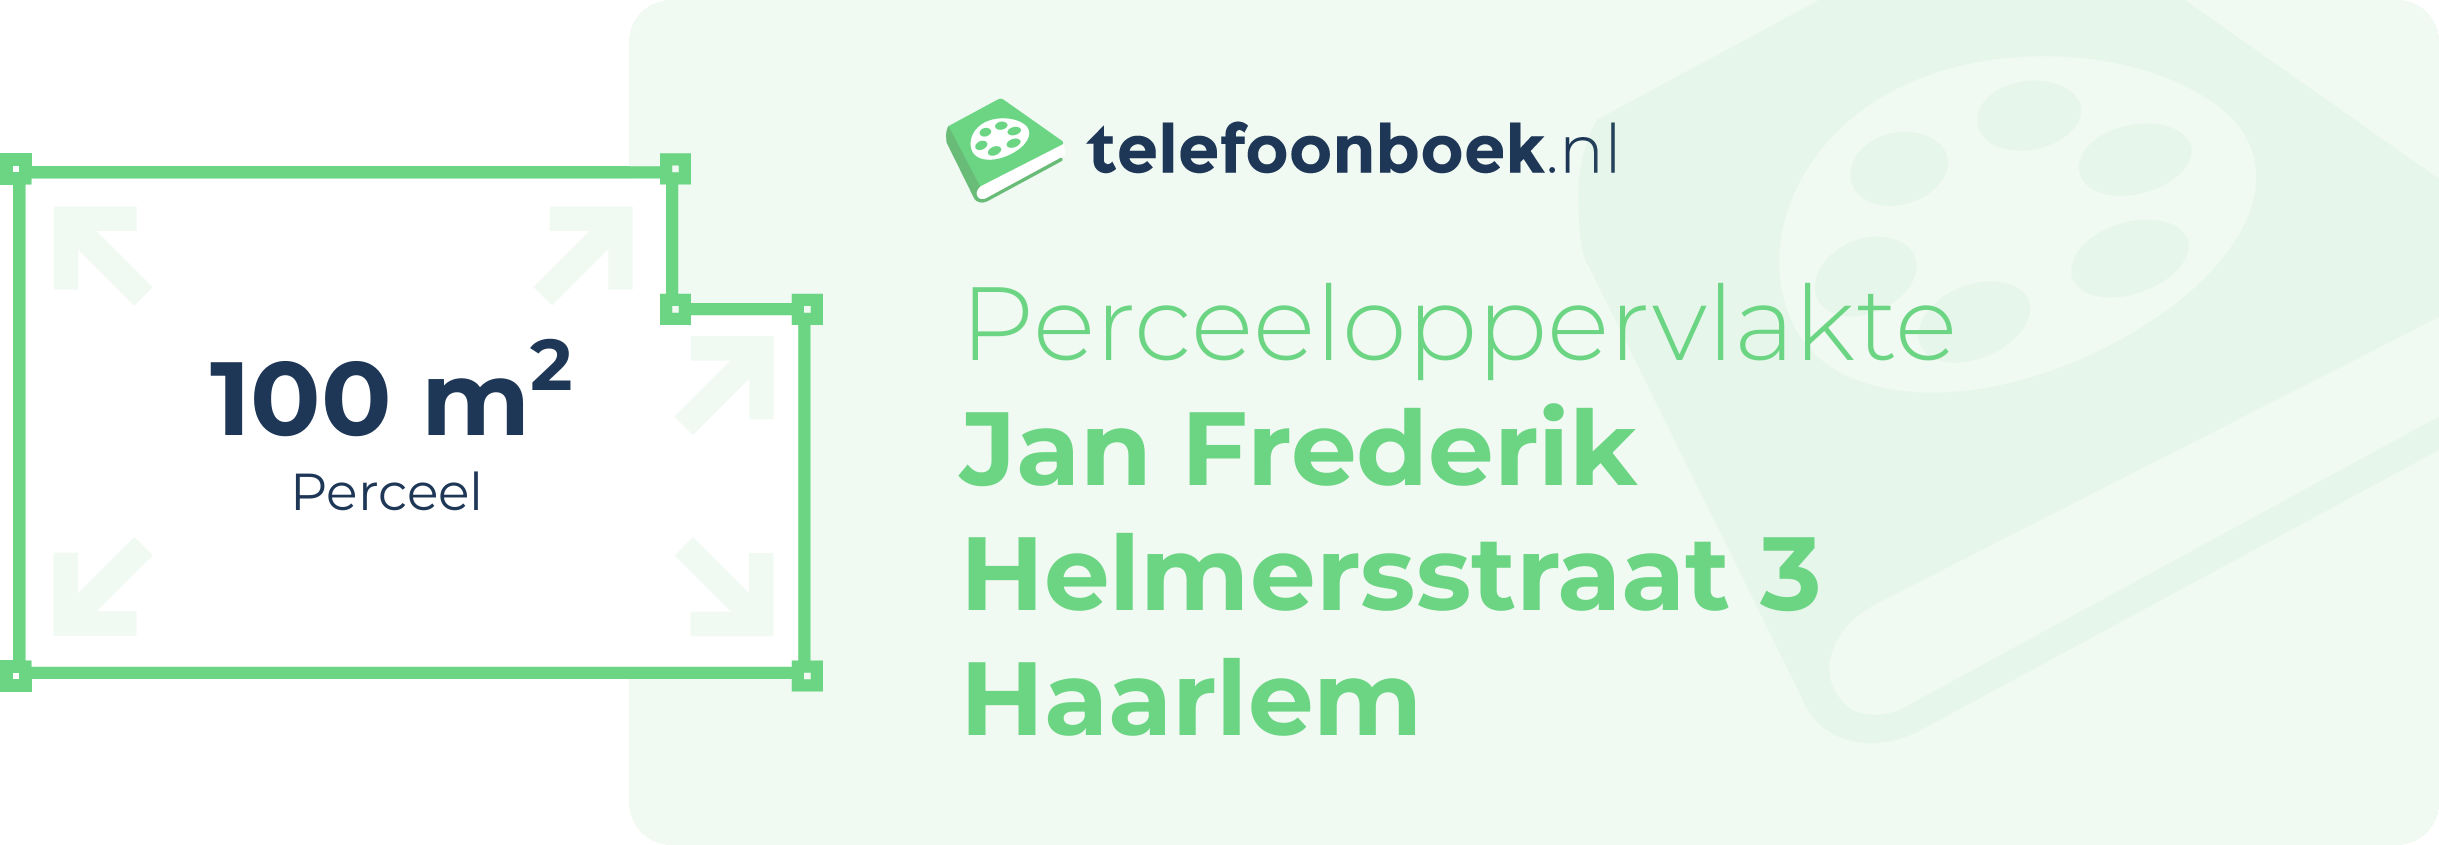 Perceeloppervlakte Jan Frederik Helmersstraat 3 Haarlem